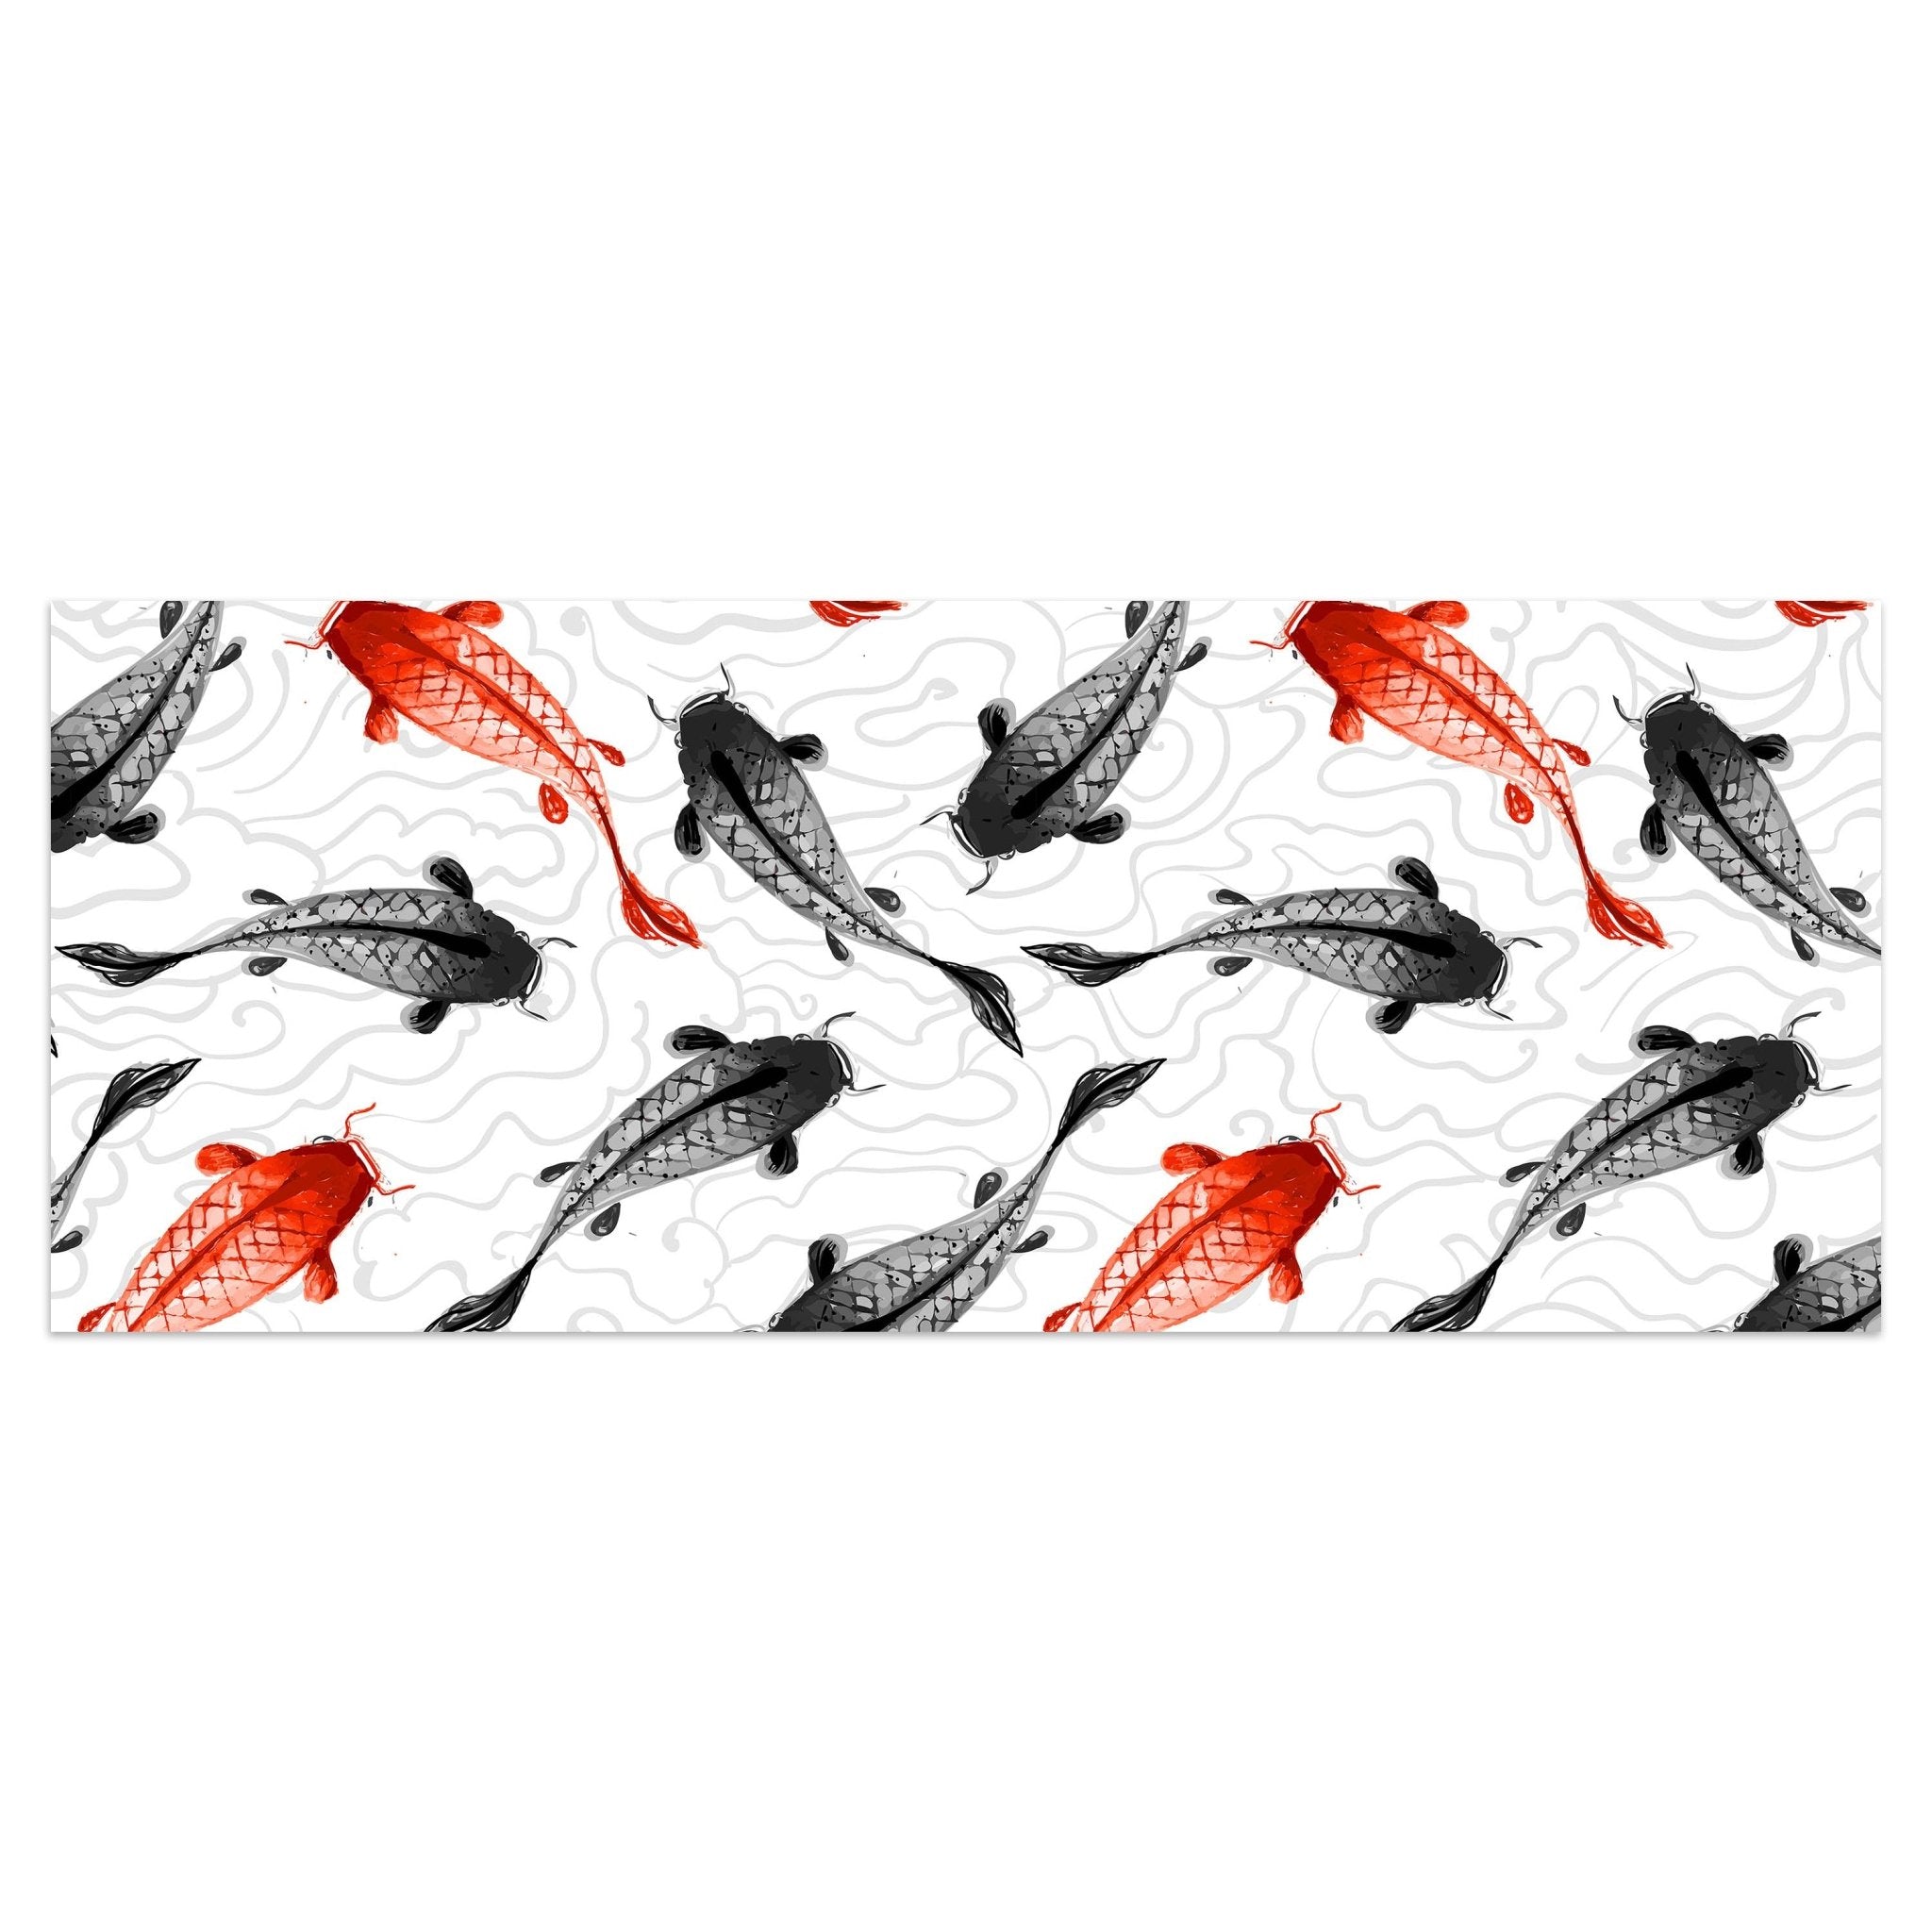 Leinwandbild rote und schwarze Koi-Karpfen M0946 kaufen - Bild 1